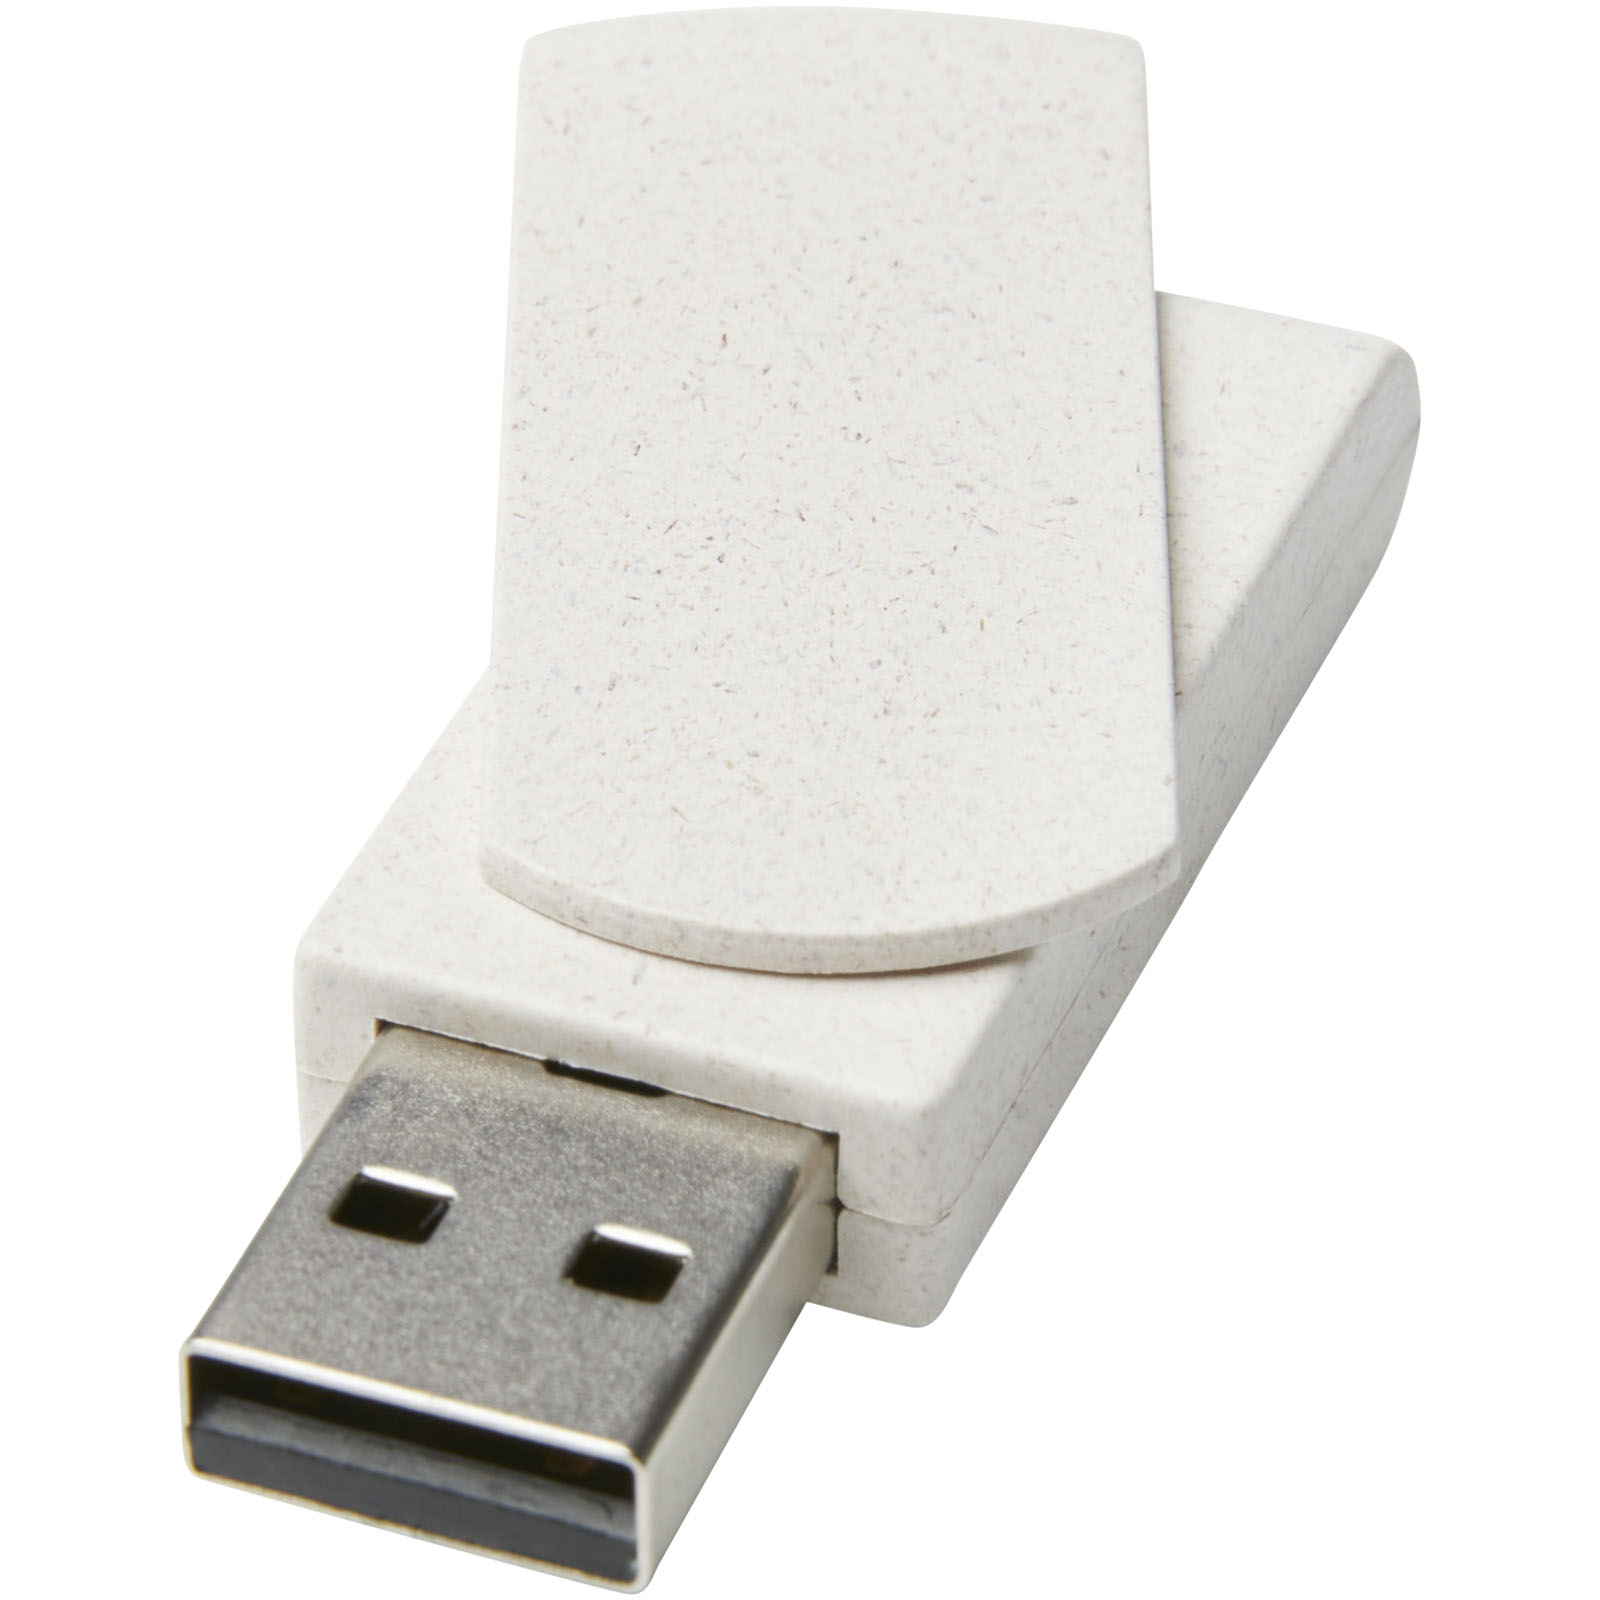 Clés USB - Clé USB Rotate 8 Go en paille de blé